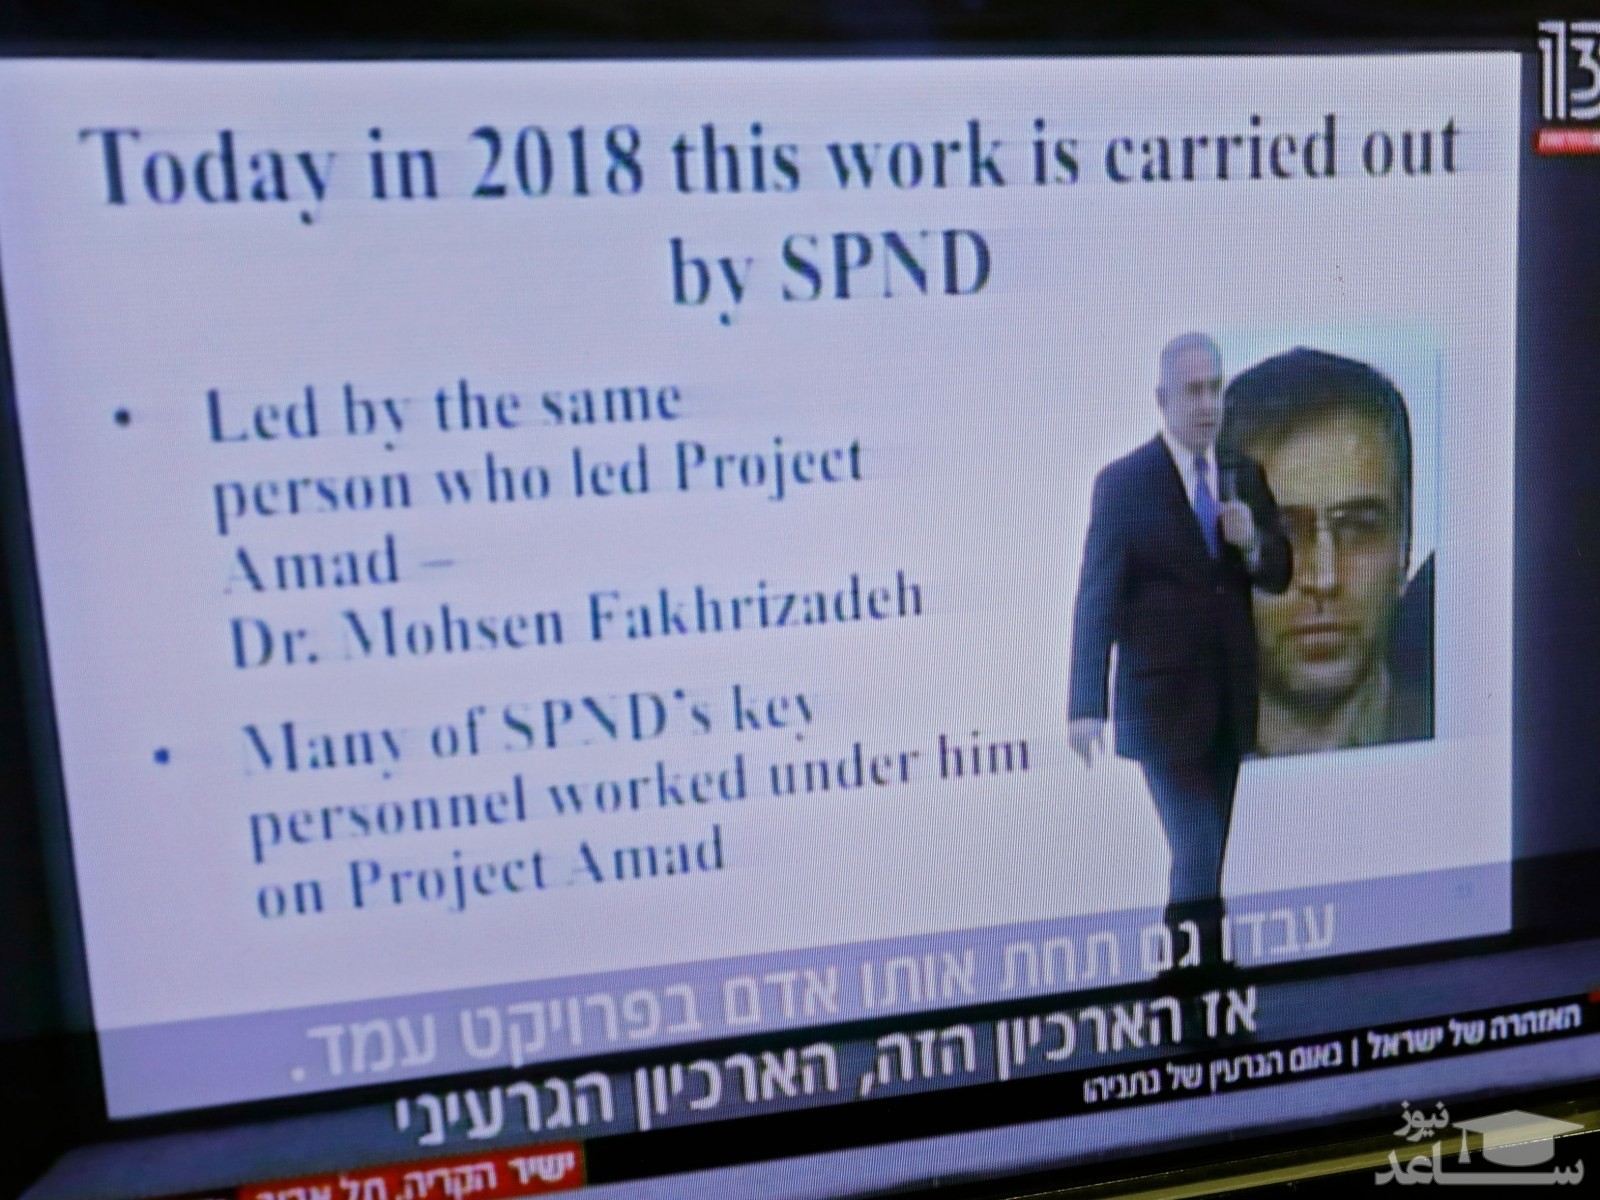 فیلمی کمتر دیده شده از سخنان نتانیاهو درباره برنامه موشکی ایران و شهید محسن فخری زاده در سال 2018